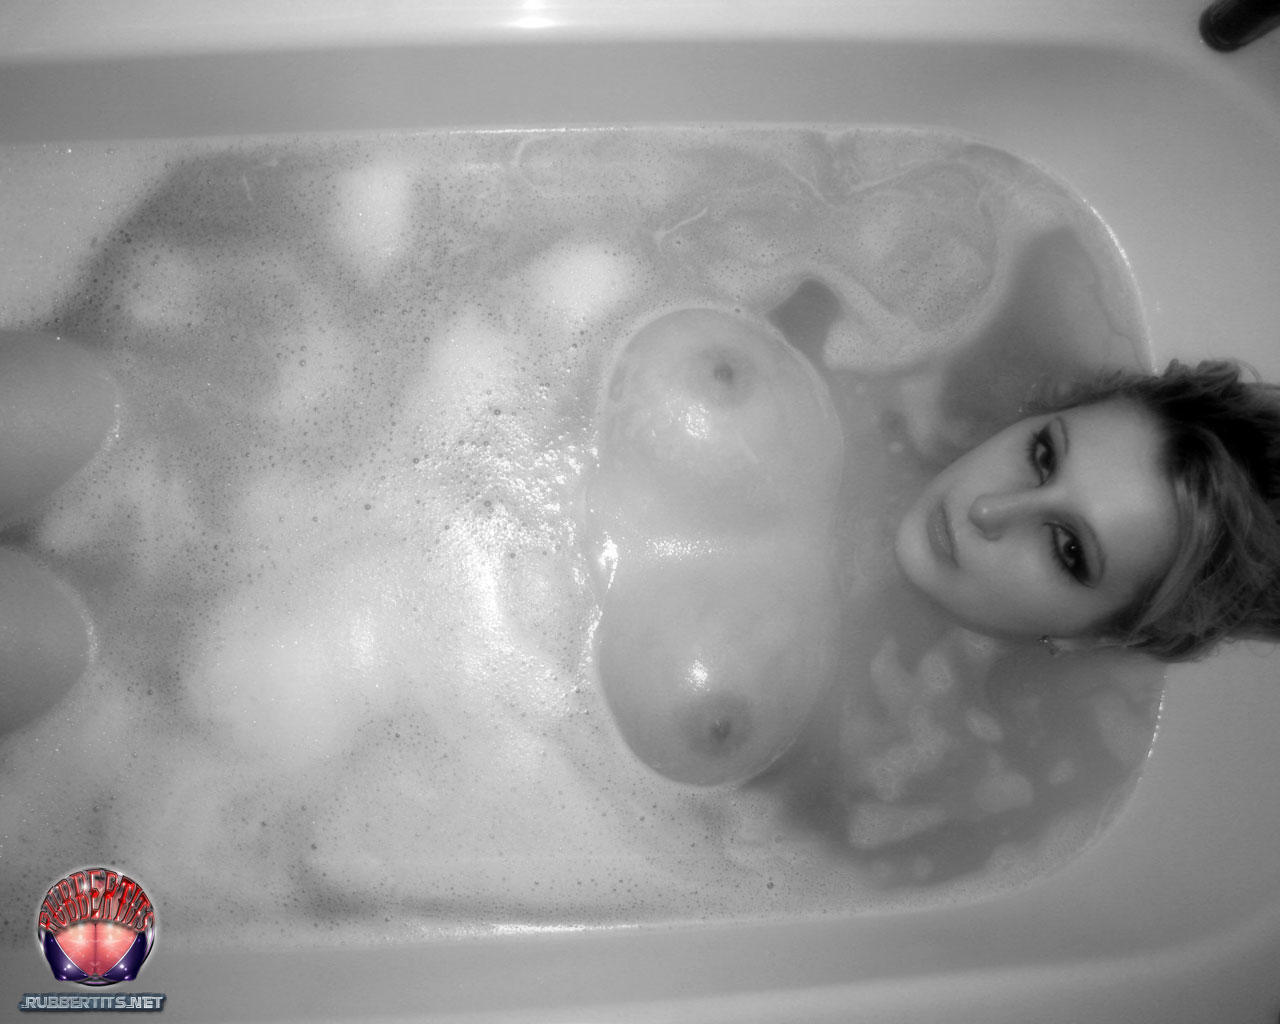 Rubber Tits Bathtime foto porno #426805766 | Rubber Tits Pics, Bath, porno mobile